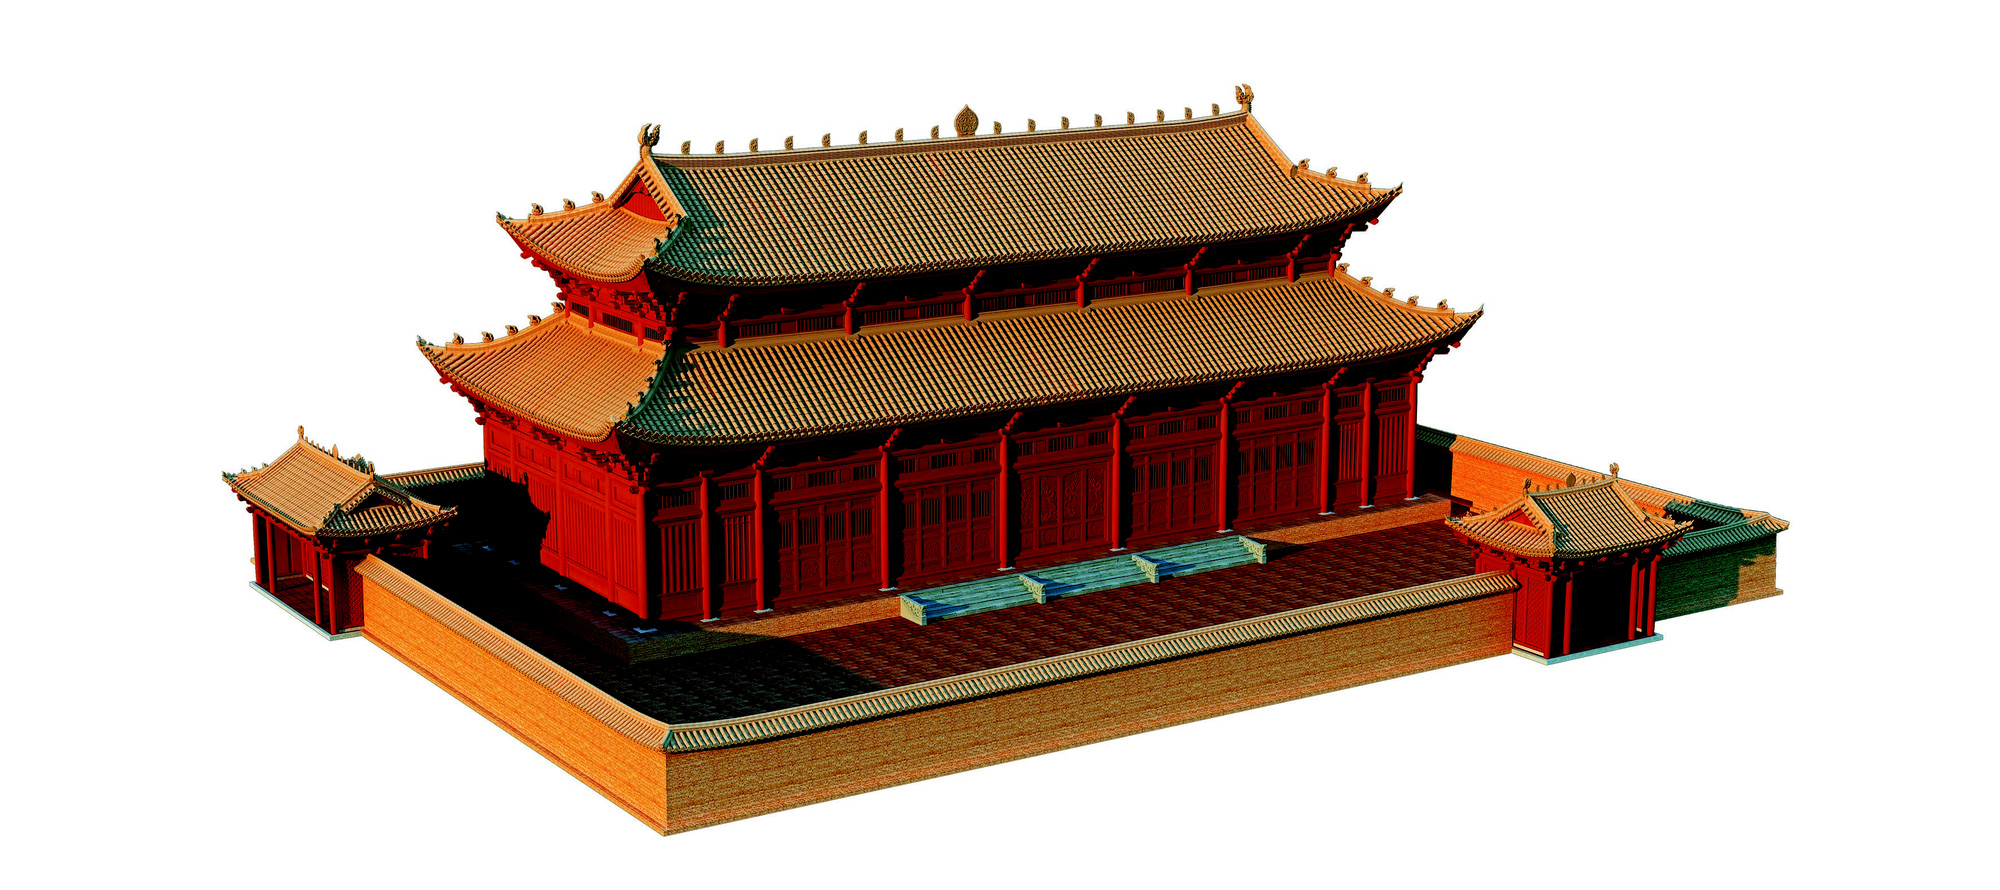 Phát hiện “chấn động” về hình thái kiến trúc cung điện thời Lý ở Hoàng thành Thăng Long (kỳ 1) - Ảnh 2.